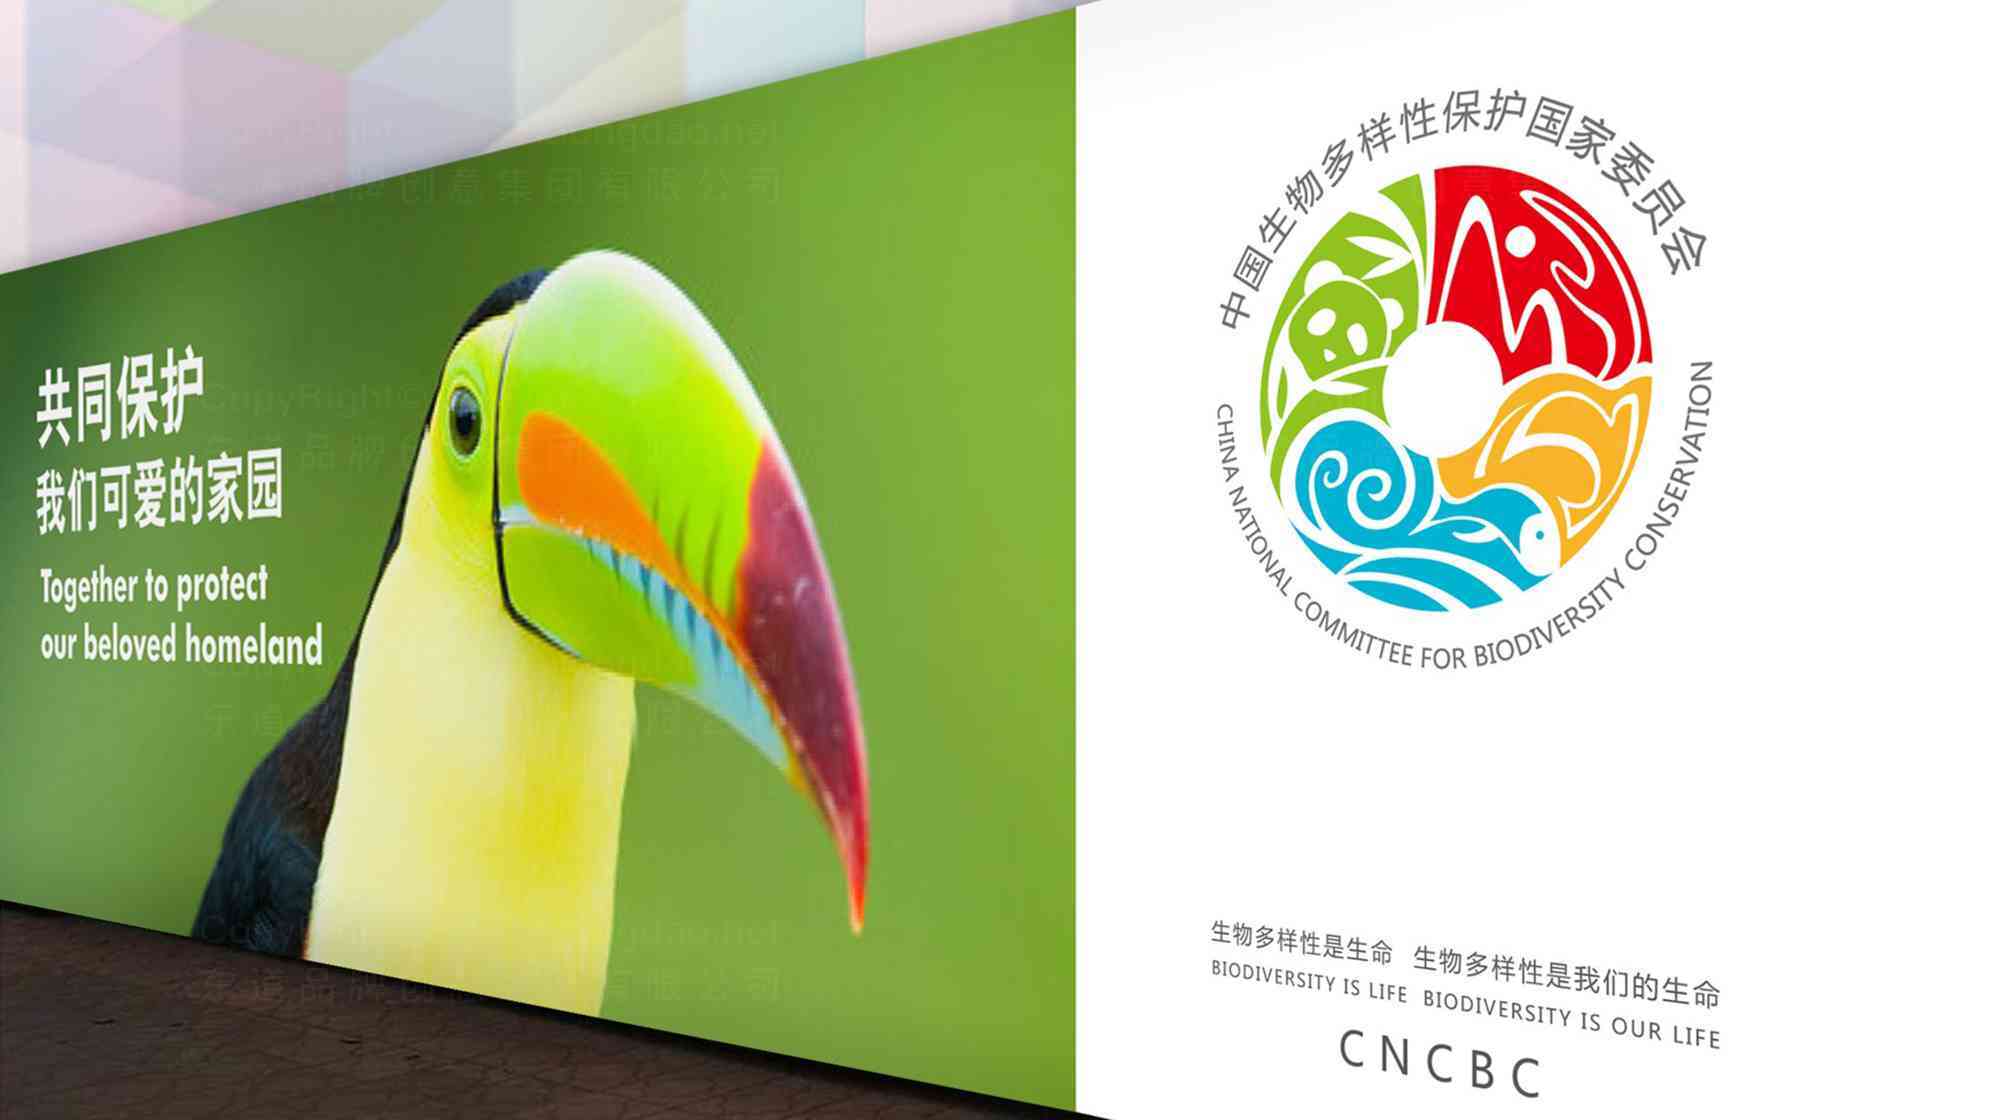 中国生物多样性保护国家委员会企业品牌logo设计图片素材_4